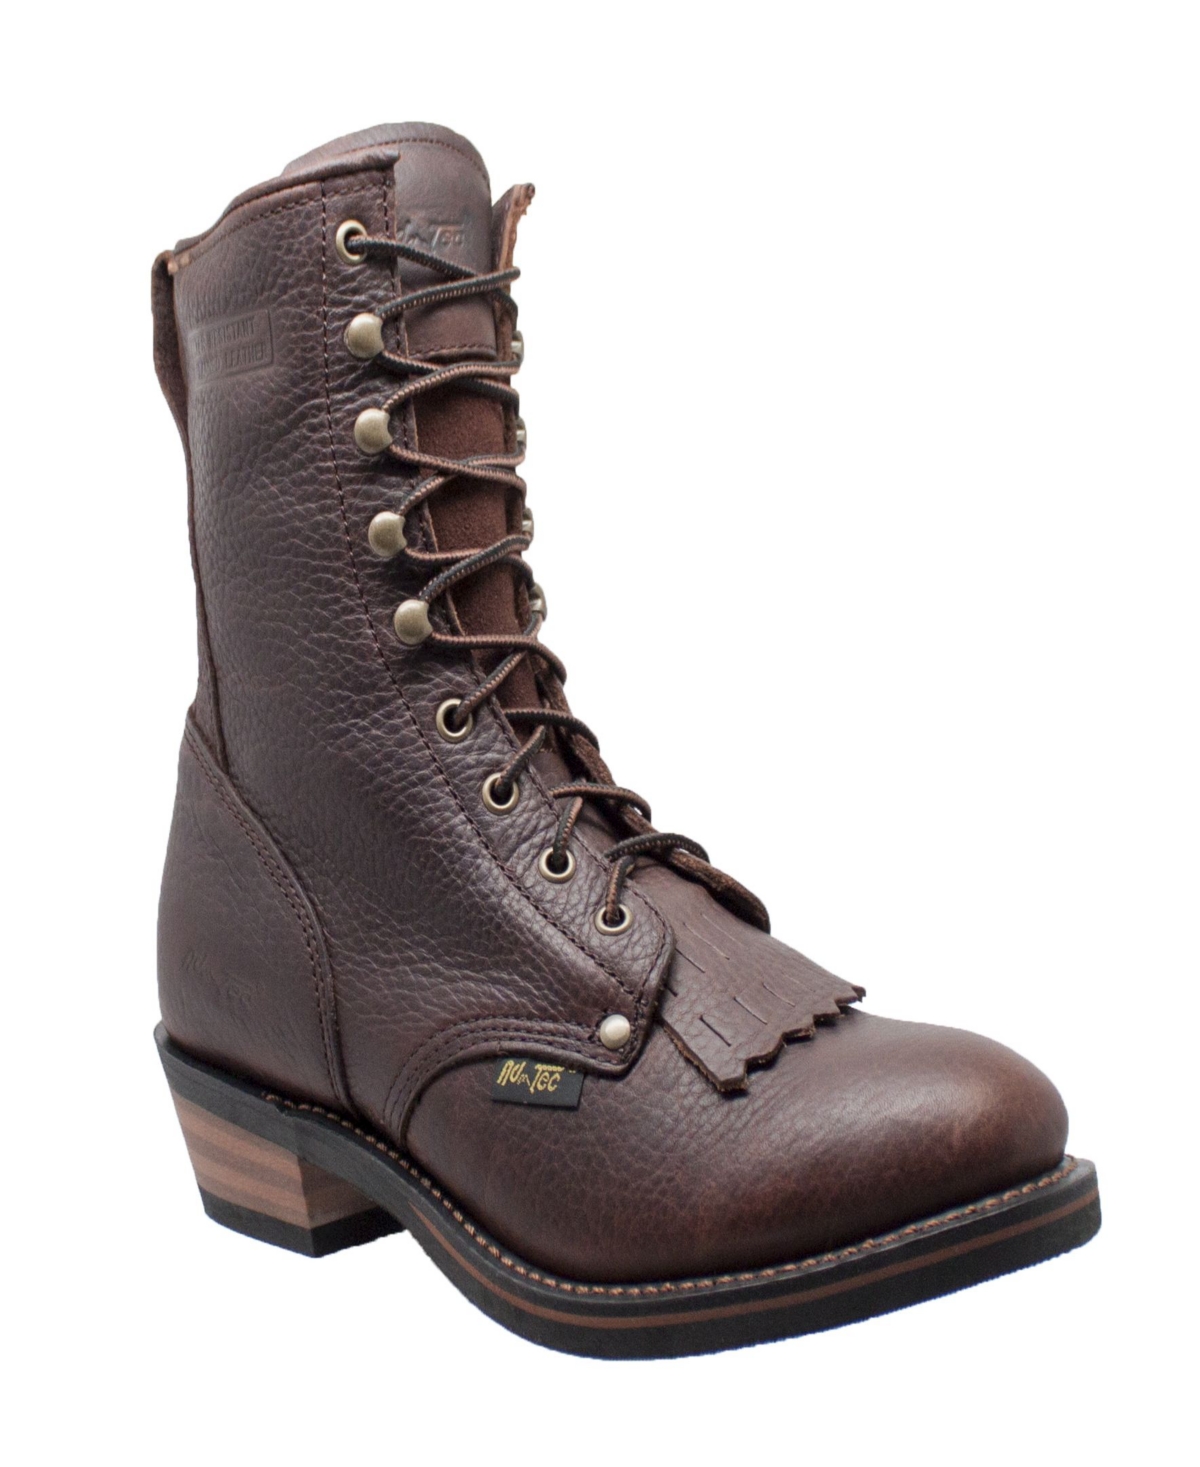 AdTec Men's 9" Packer Boot Men's Shoes